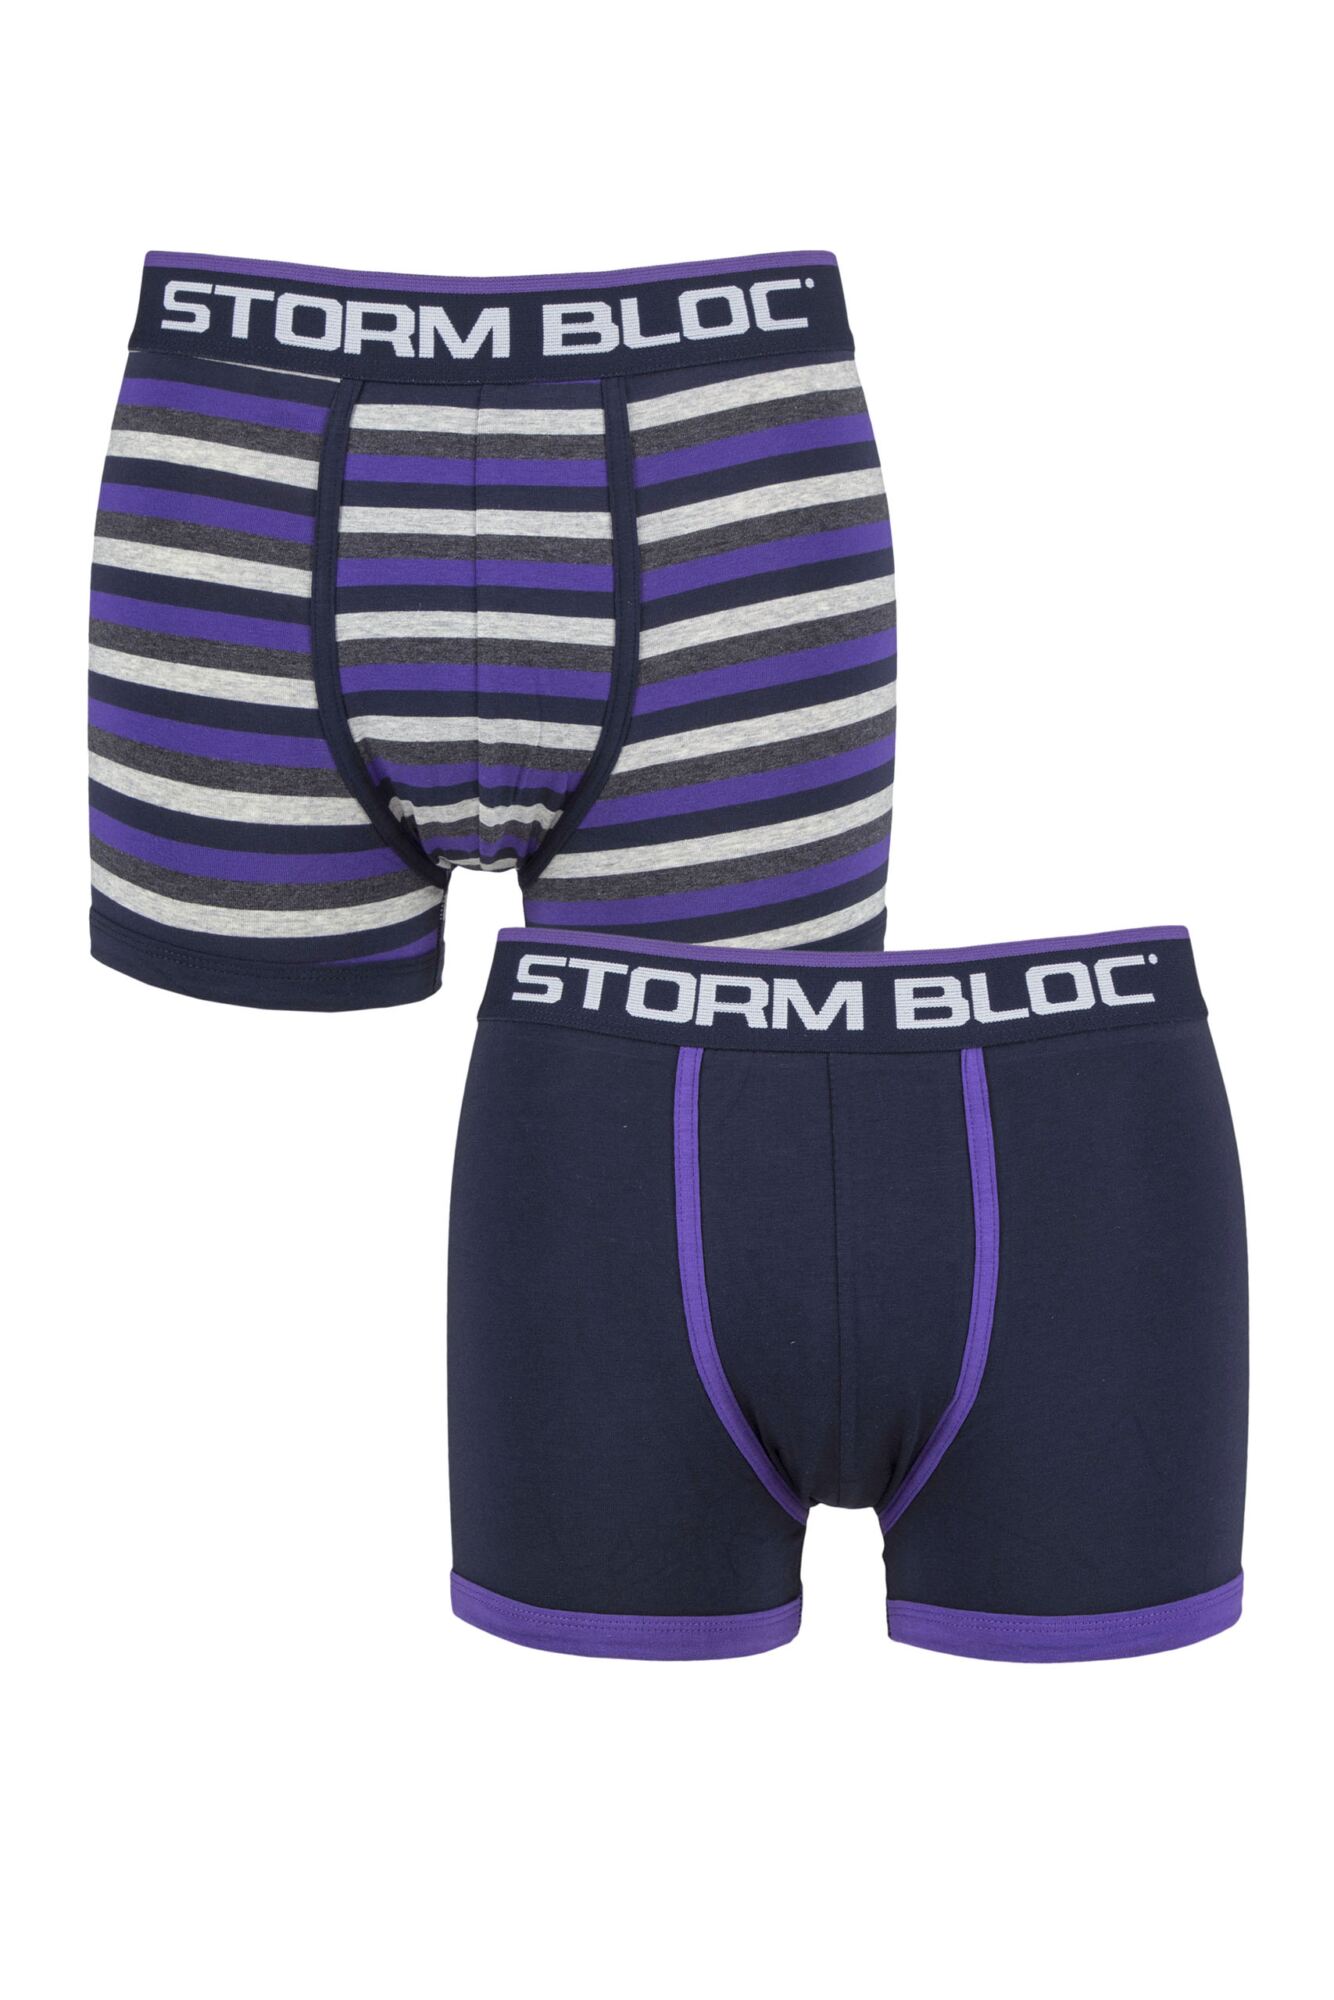 Storm Bloc Mens 2 Pair Cotton Rich Stripe Trunks